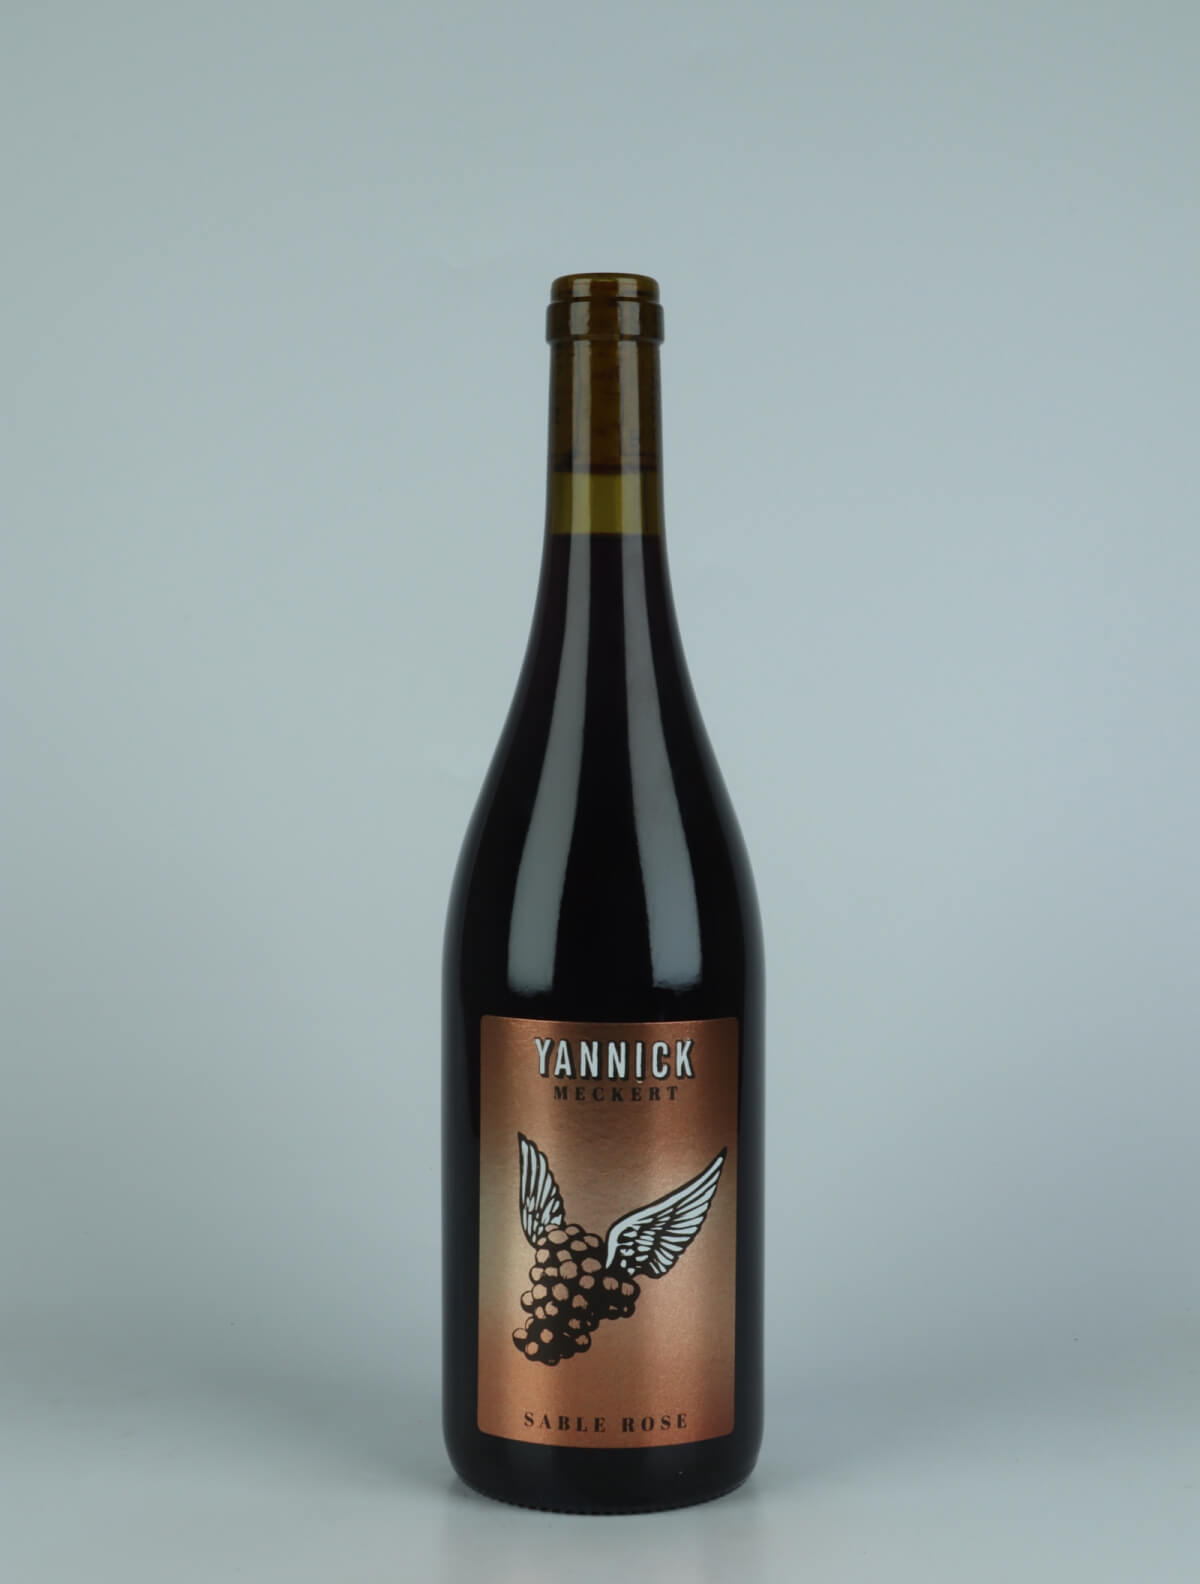 En flaske 2022 Pinot Noir - Sable Rose Rødvin fra Yannick Meckert, Alsace i Frankrig